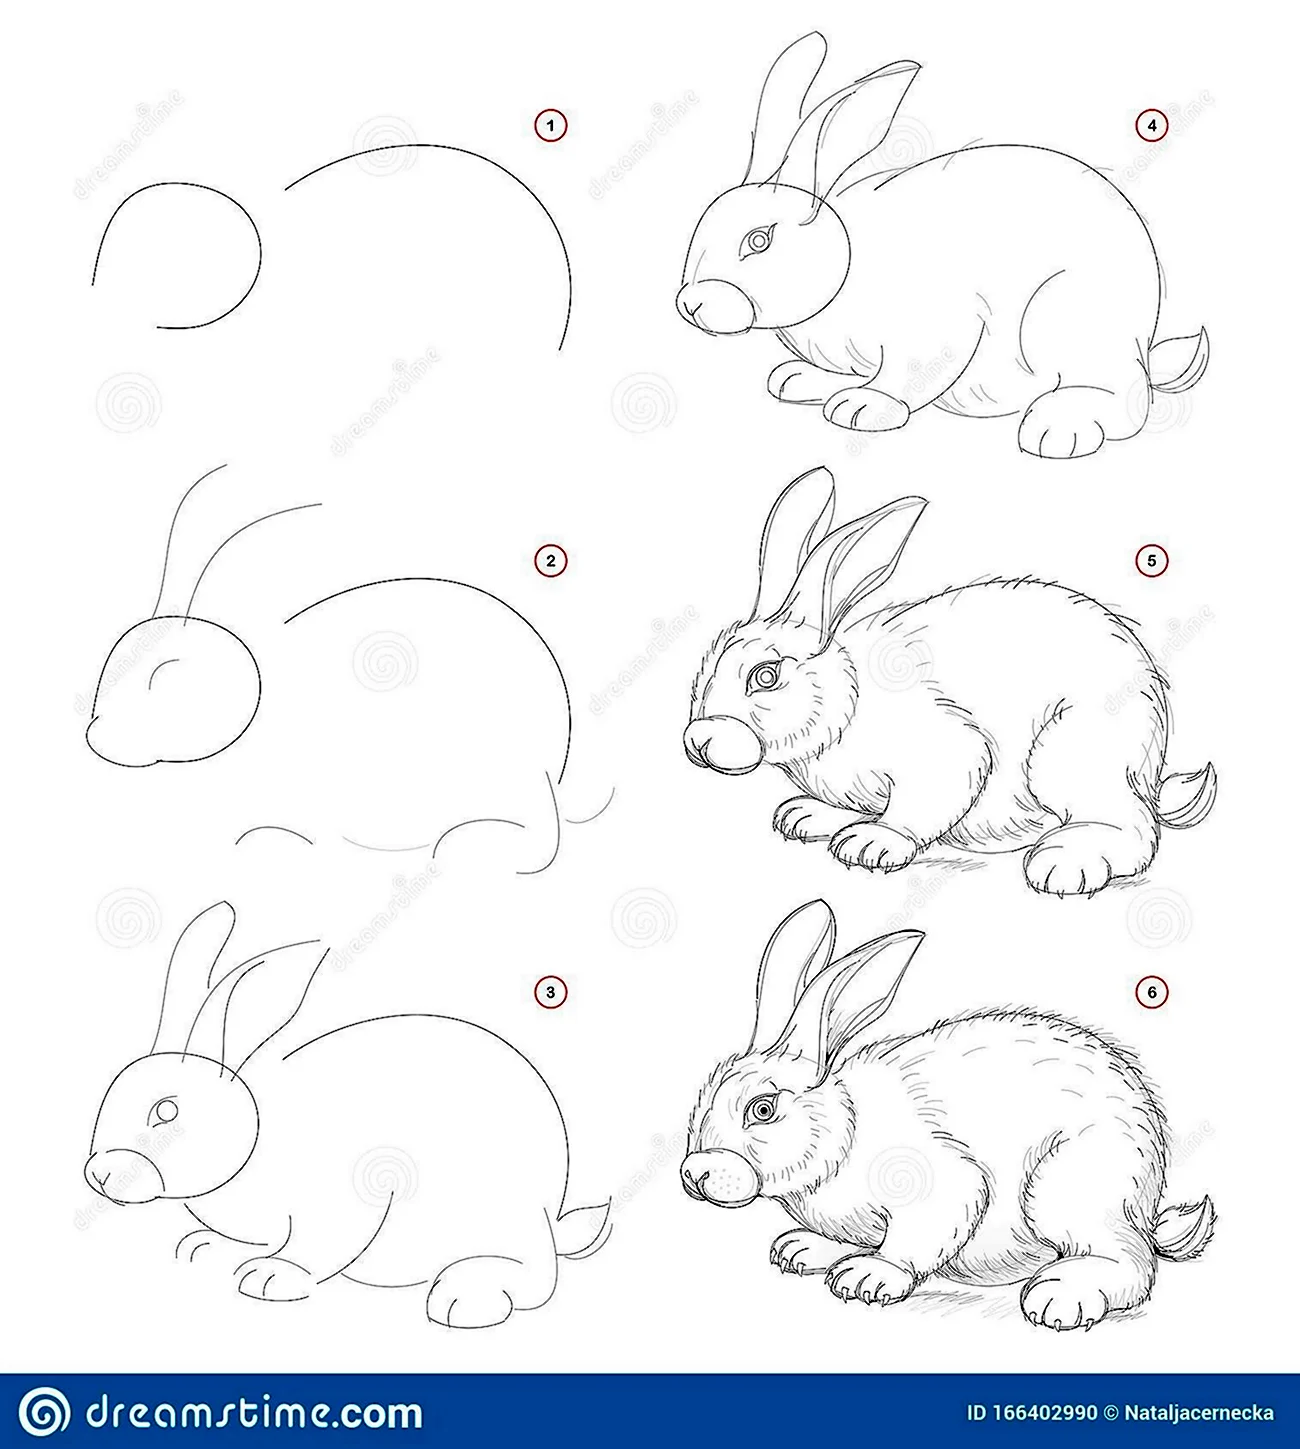 Заяц рисунок карандашом для детей. Для срисовки